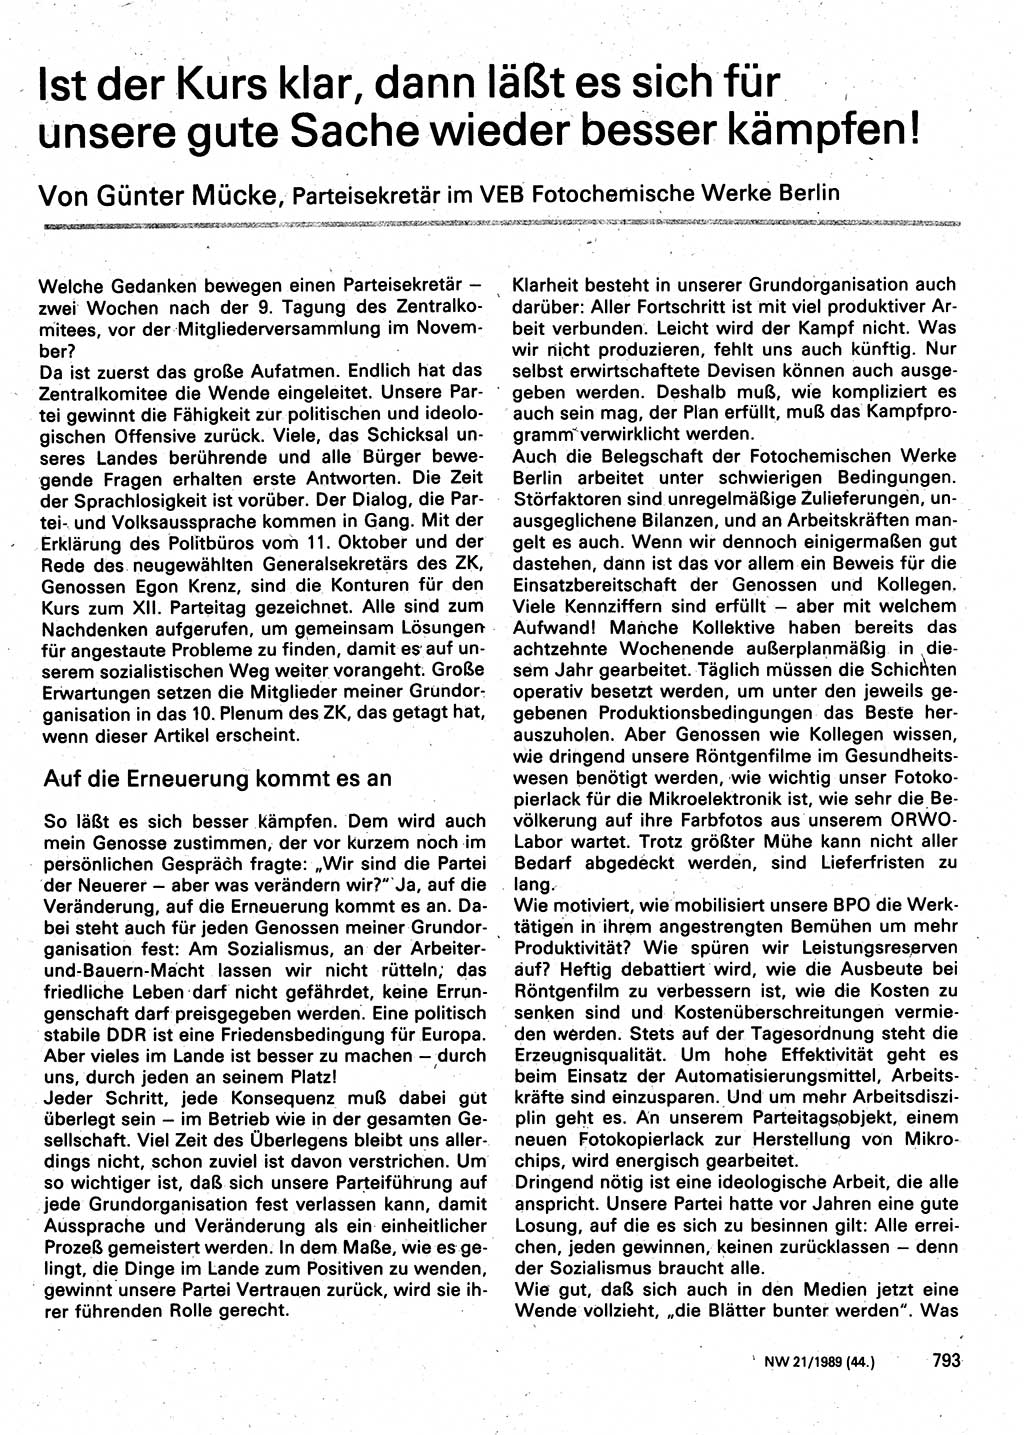 Neuer Weg (NW), Organ des Zentralkomitees (ZK) der SED (Sozialistische Einheitspartei Deutschlands) für Fragen des Parteilebens, 44. Jahrgang [Deutsche Demokratische Republik (DDR)] 1989, Seite 793 (NW ZK SED DDR 1989, S. 793)